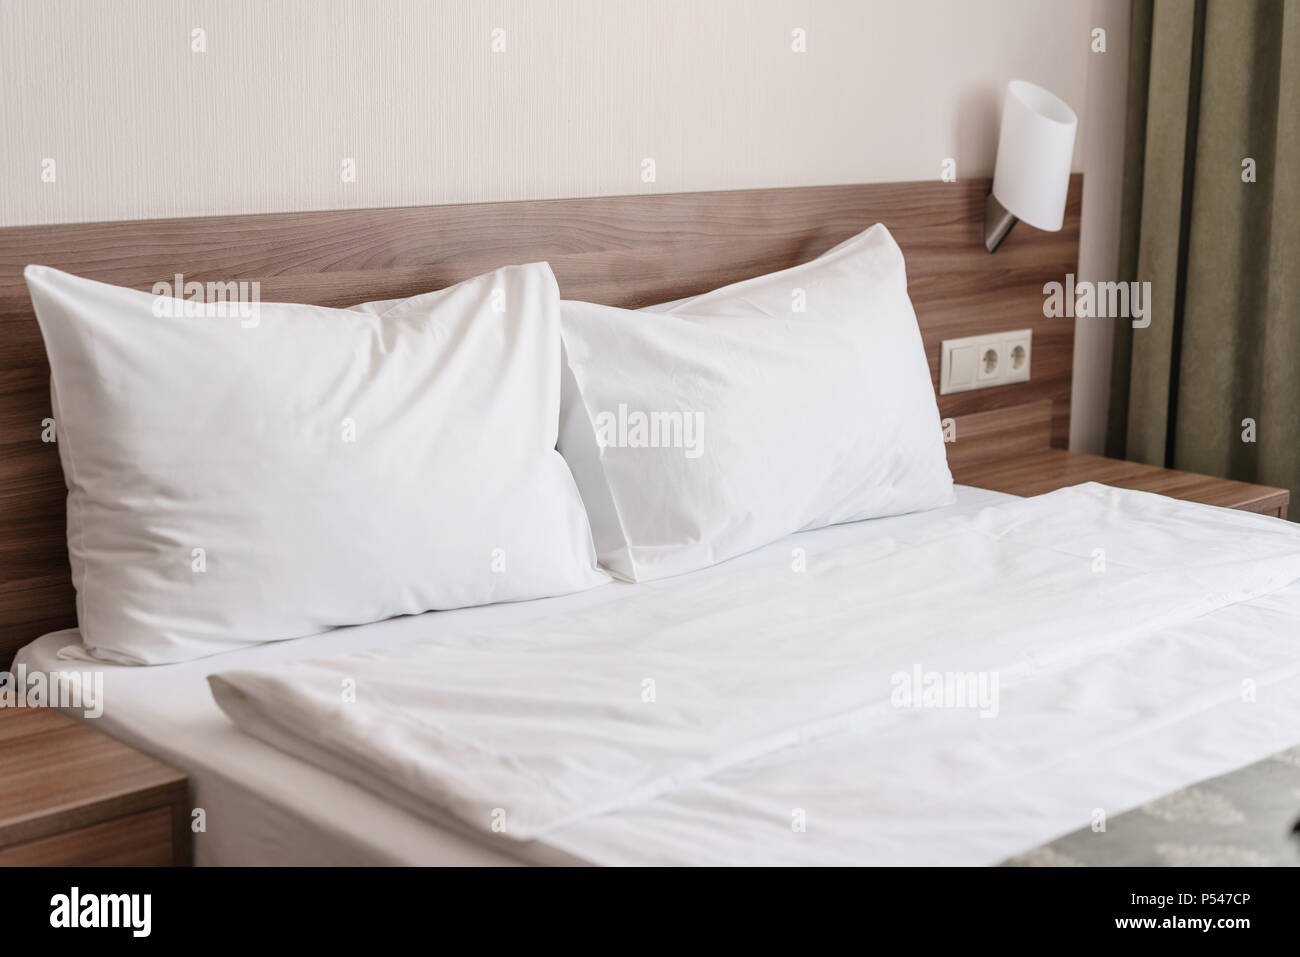 Moderne Schlafzimmer mit Doppelbett. Komfortabel mit weichen, weißen Kissen  auf dem Bett. In den Zimmern einer Wohnung oder Hotel Stockfotografie -  Alamy